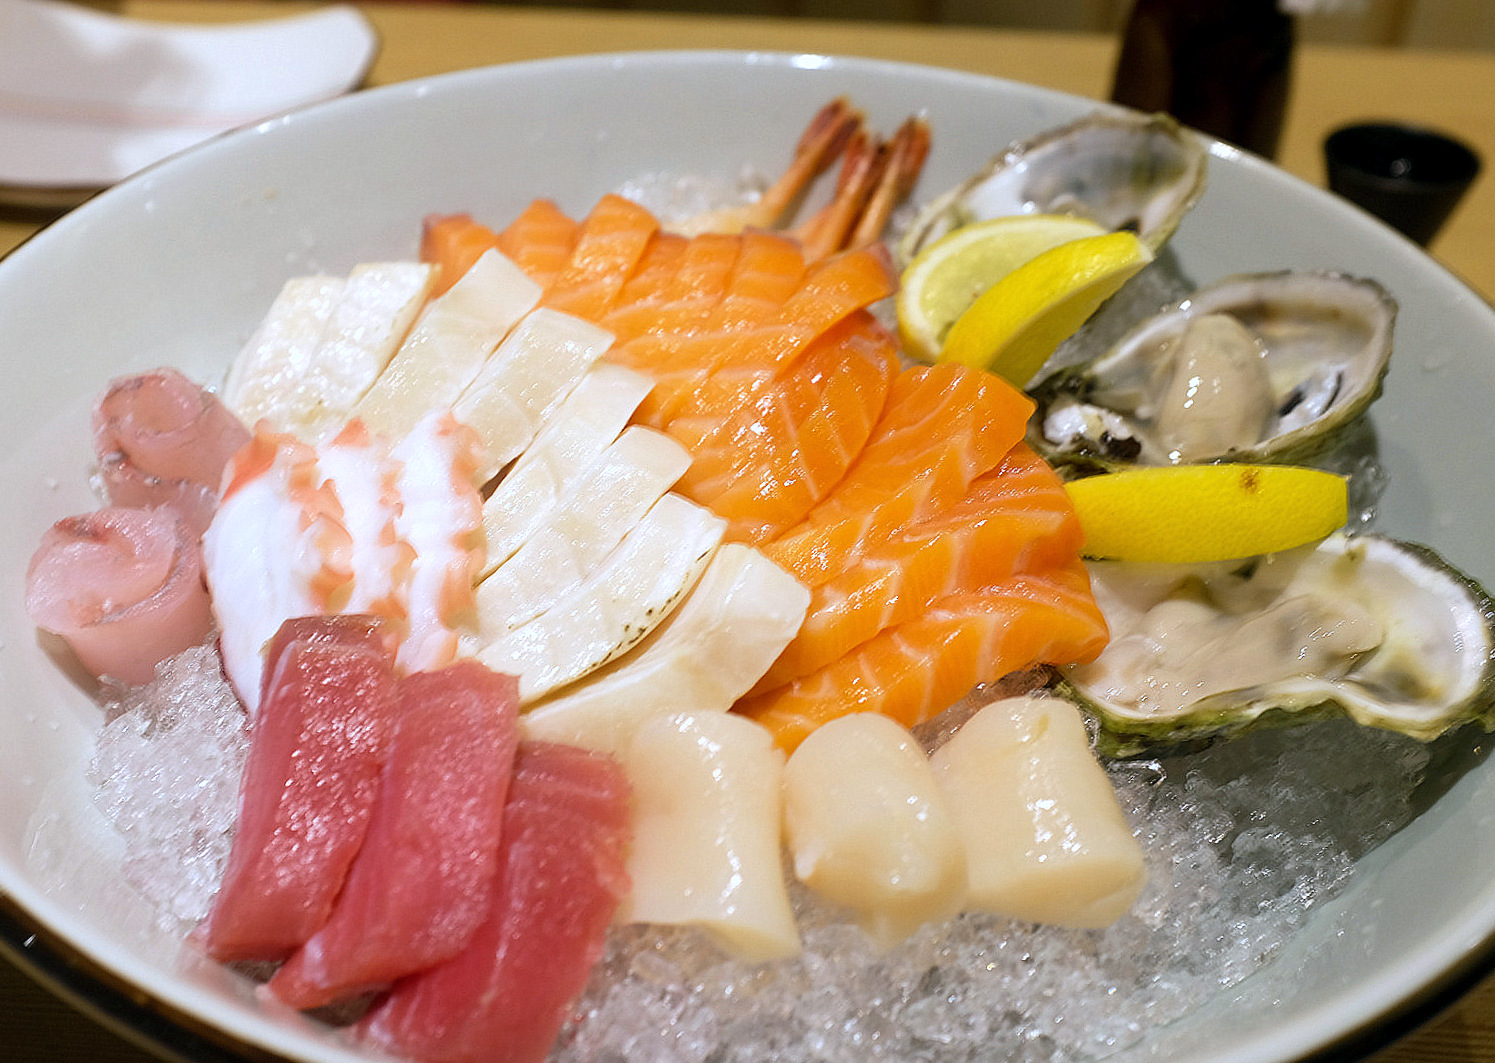 3. Sashimi platter